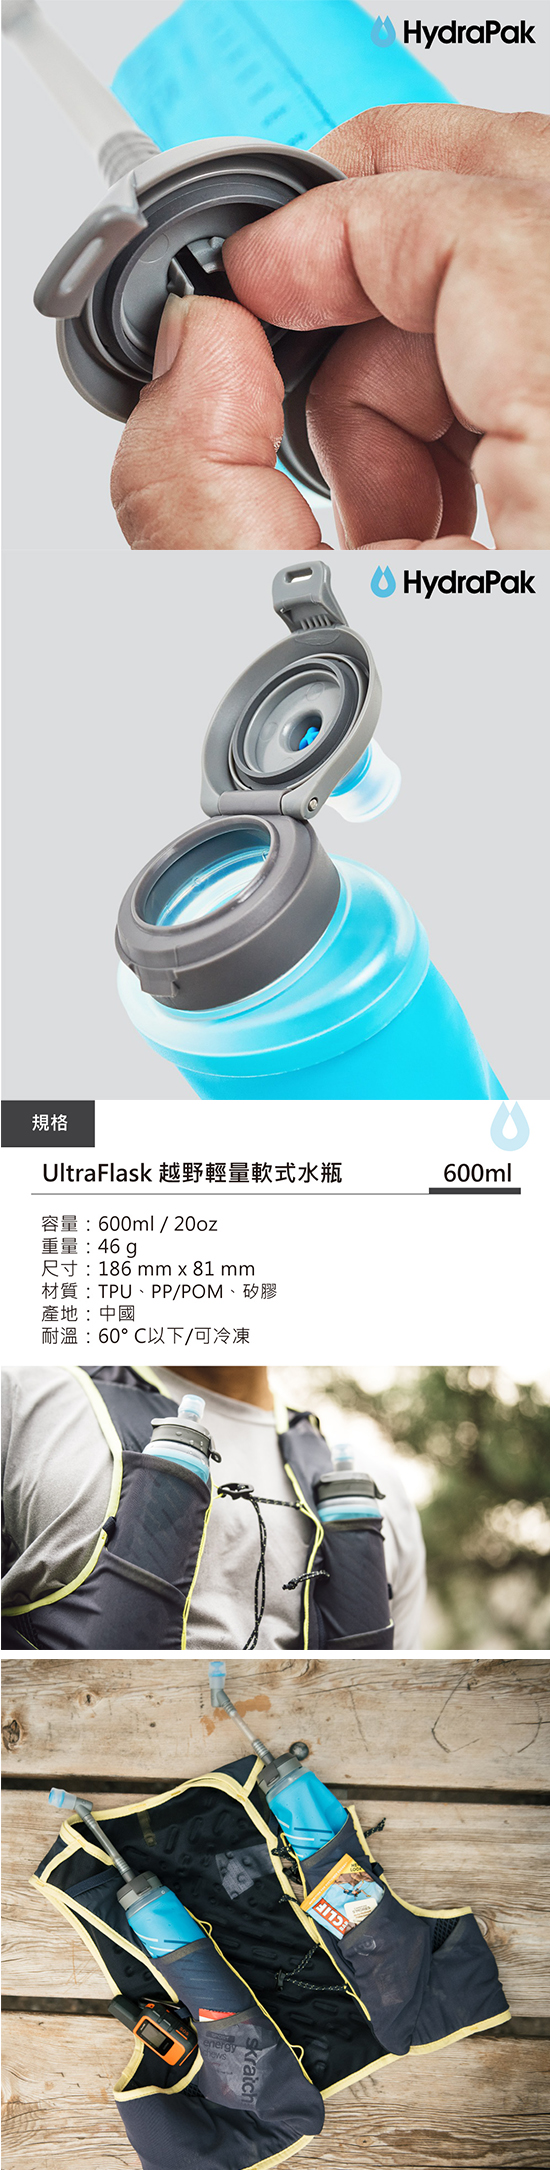 ultraflask-b.jpg